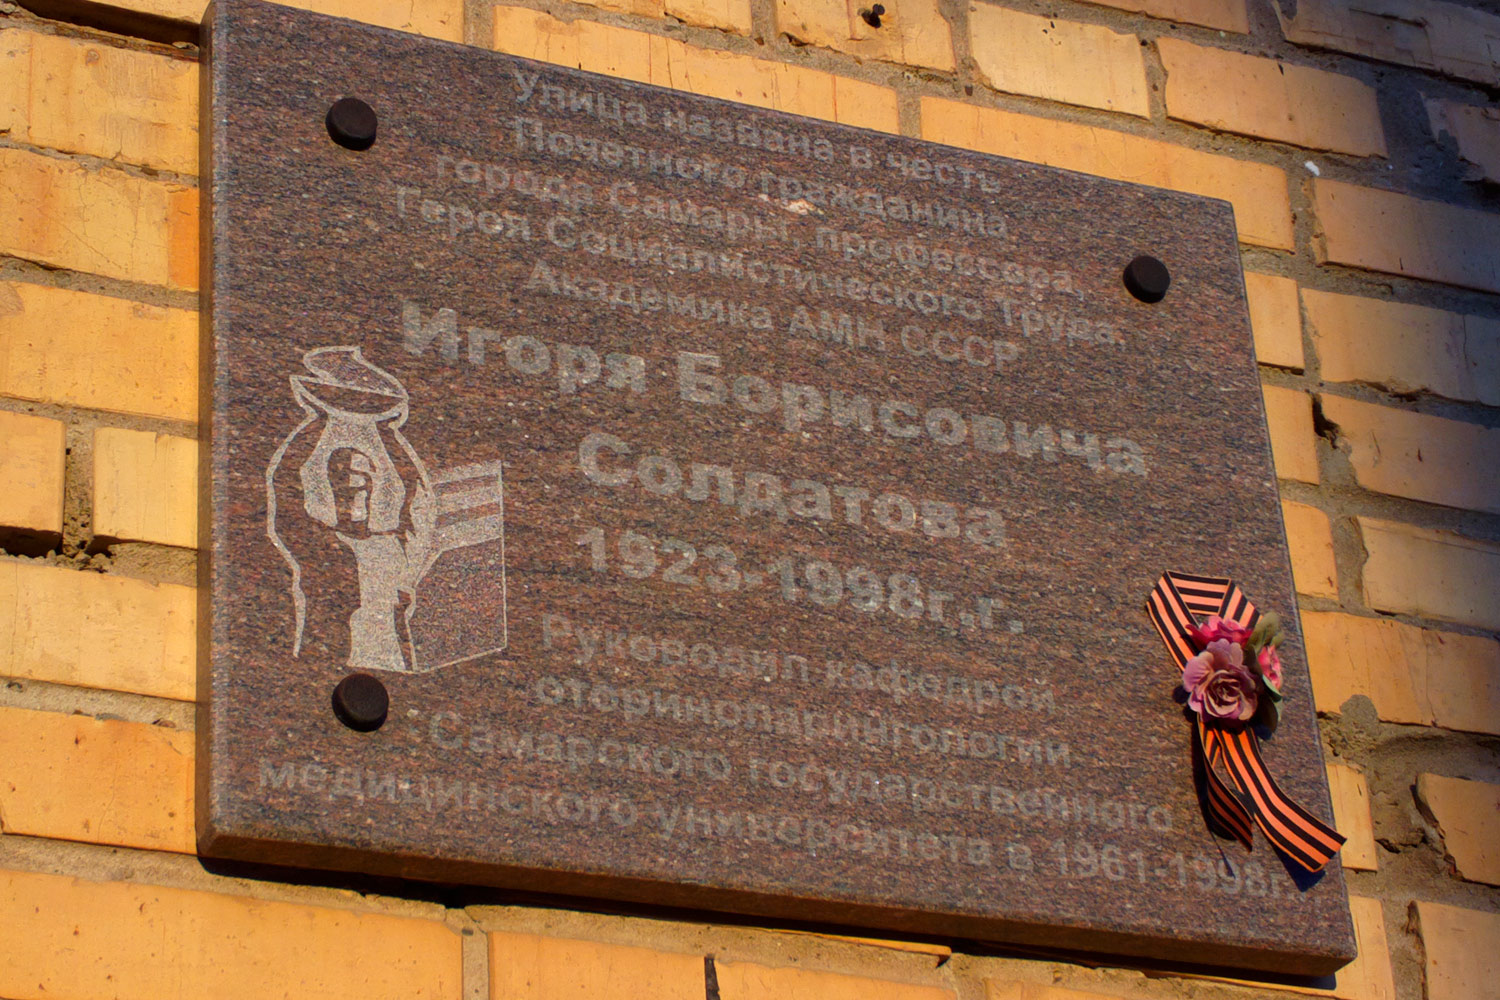 Samara, Московское шоссе, 165Б корп. 4. Samara — Memorial plaques